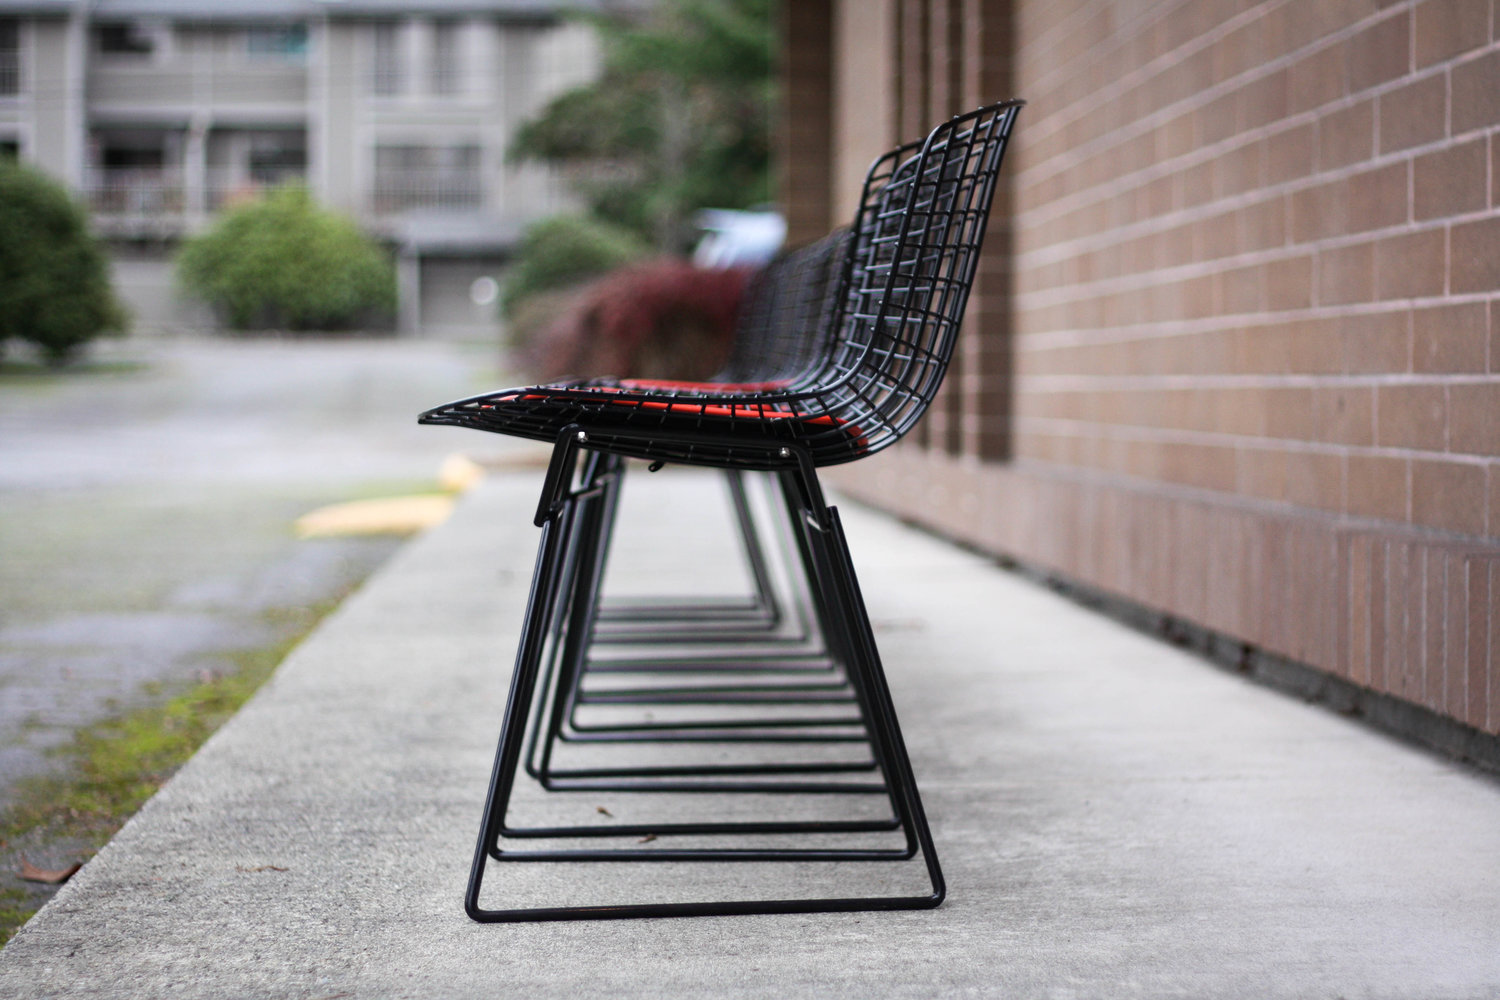 Replacement Seat Pad - Bertoia Side Chair & Stool - Original Design